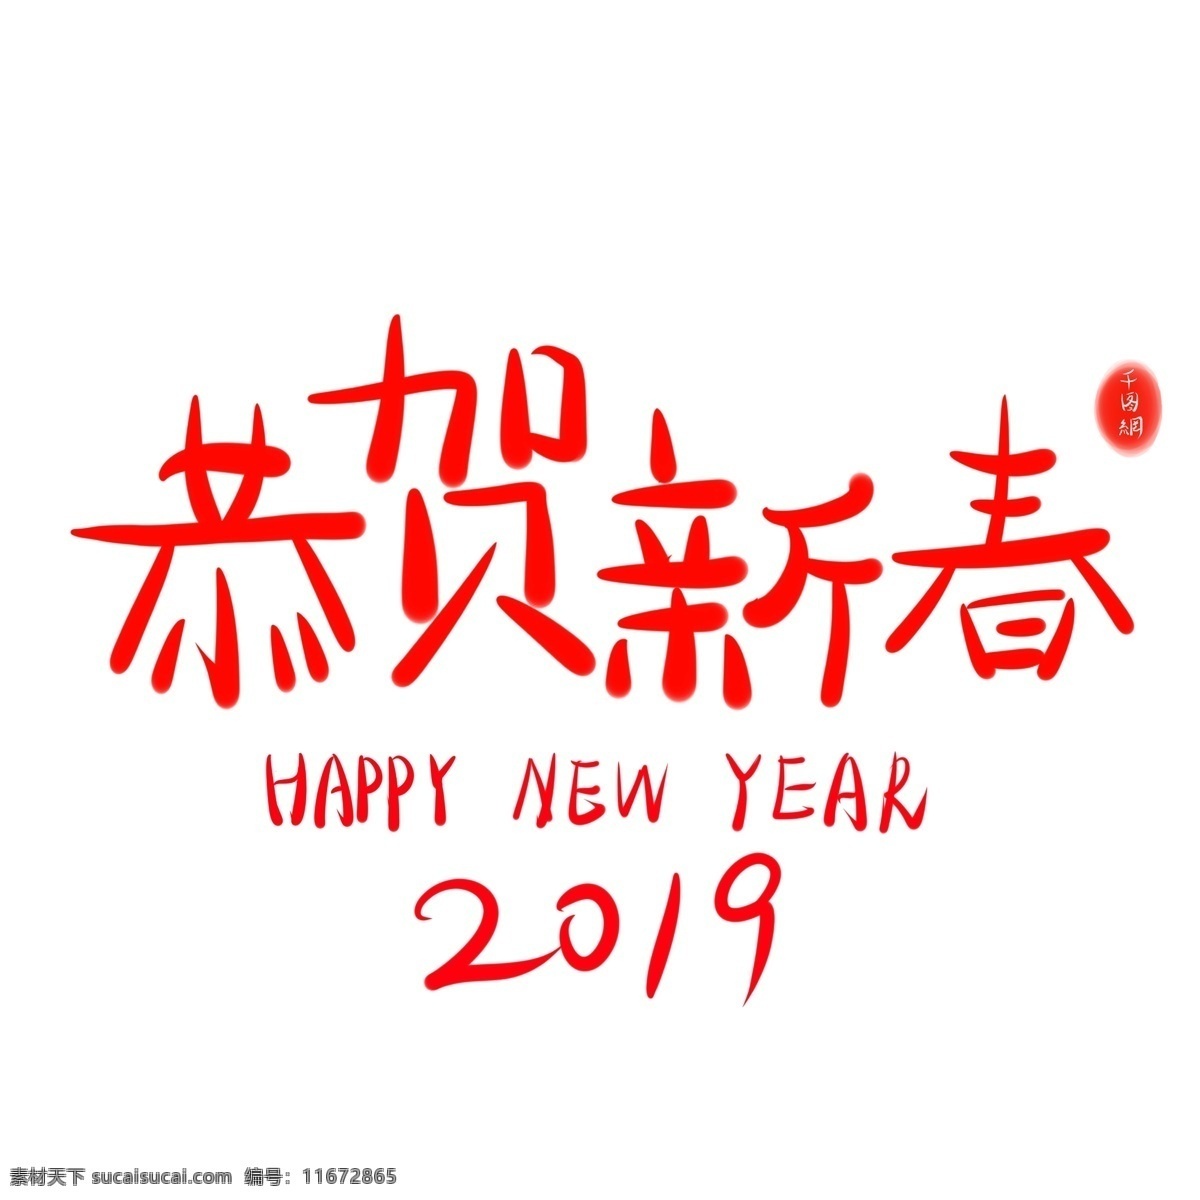 恭贺 新春 2019 艺术 字 红色 字体 喜庆 商用 恭贺新春 元素 艺术字 可商用